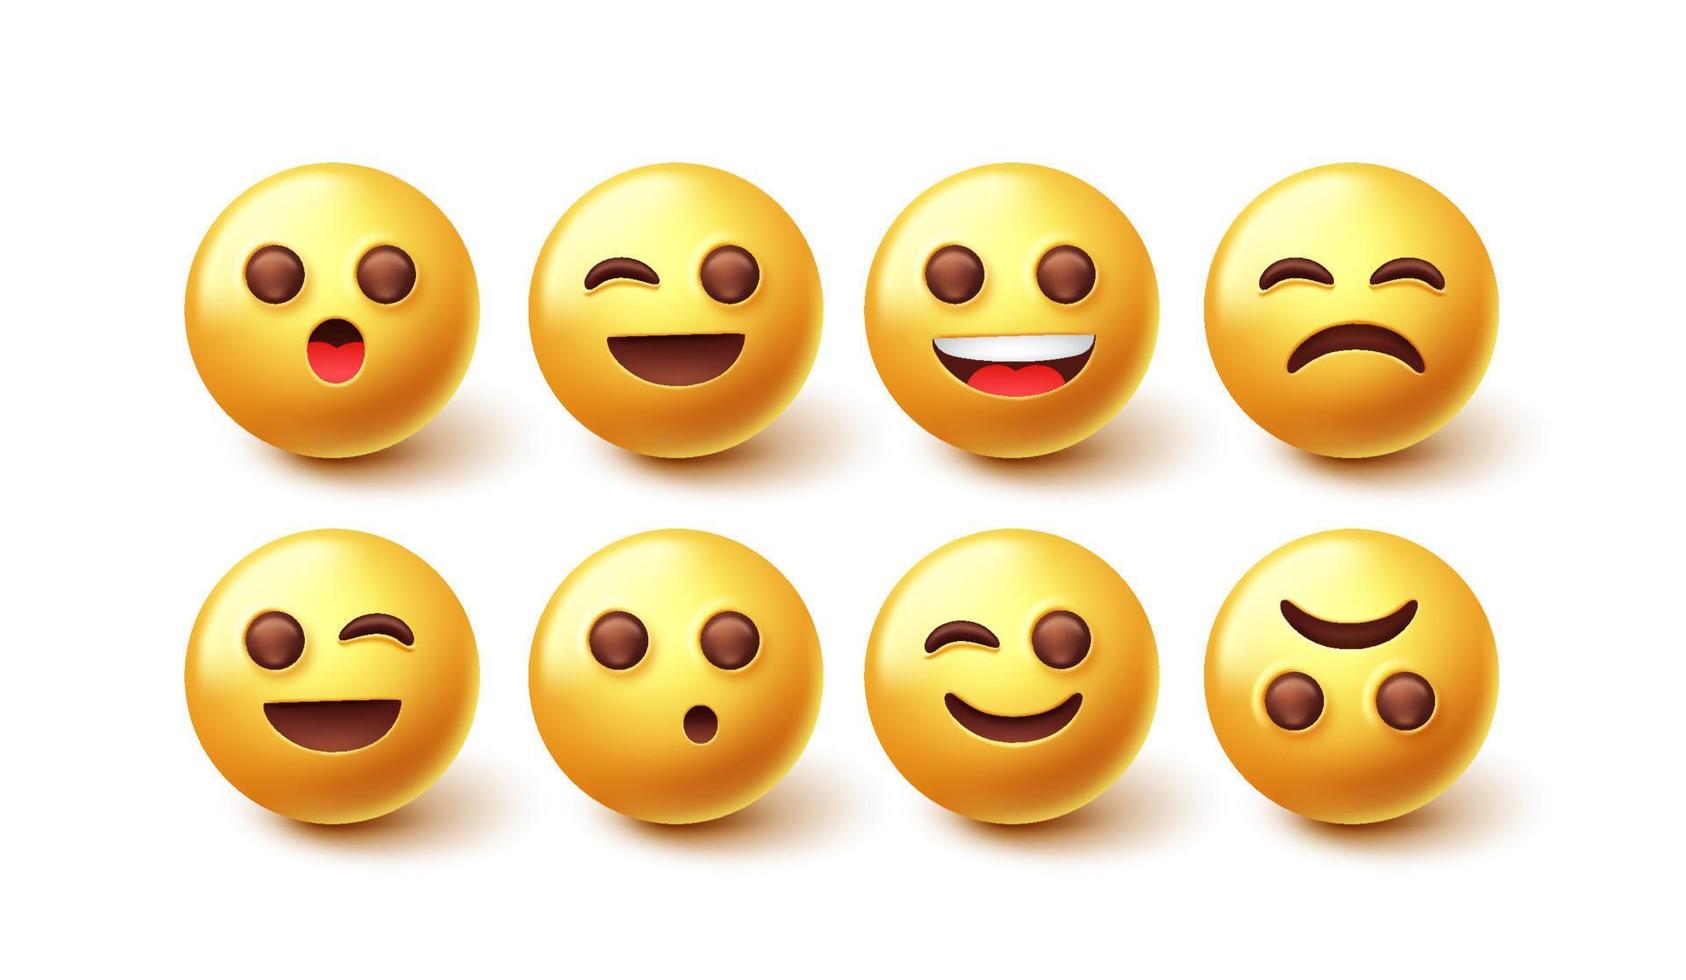 Emoji-Zeichenvektorsatz. 3D-Emoticon in fröhlichem, traurigem und zwinkerndem, süßem Gesichtsausdruck einzeln auf weißem Hintergrund für Emojis-Designsammlung. Vektor-Illustration. vektor